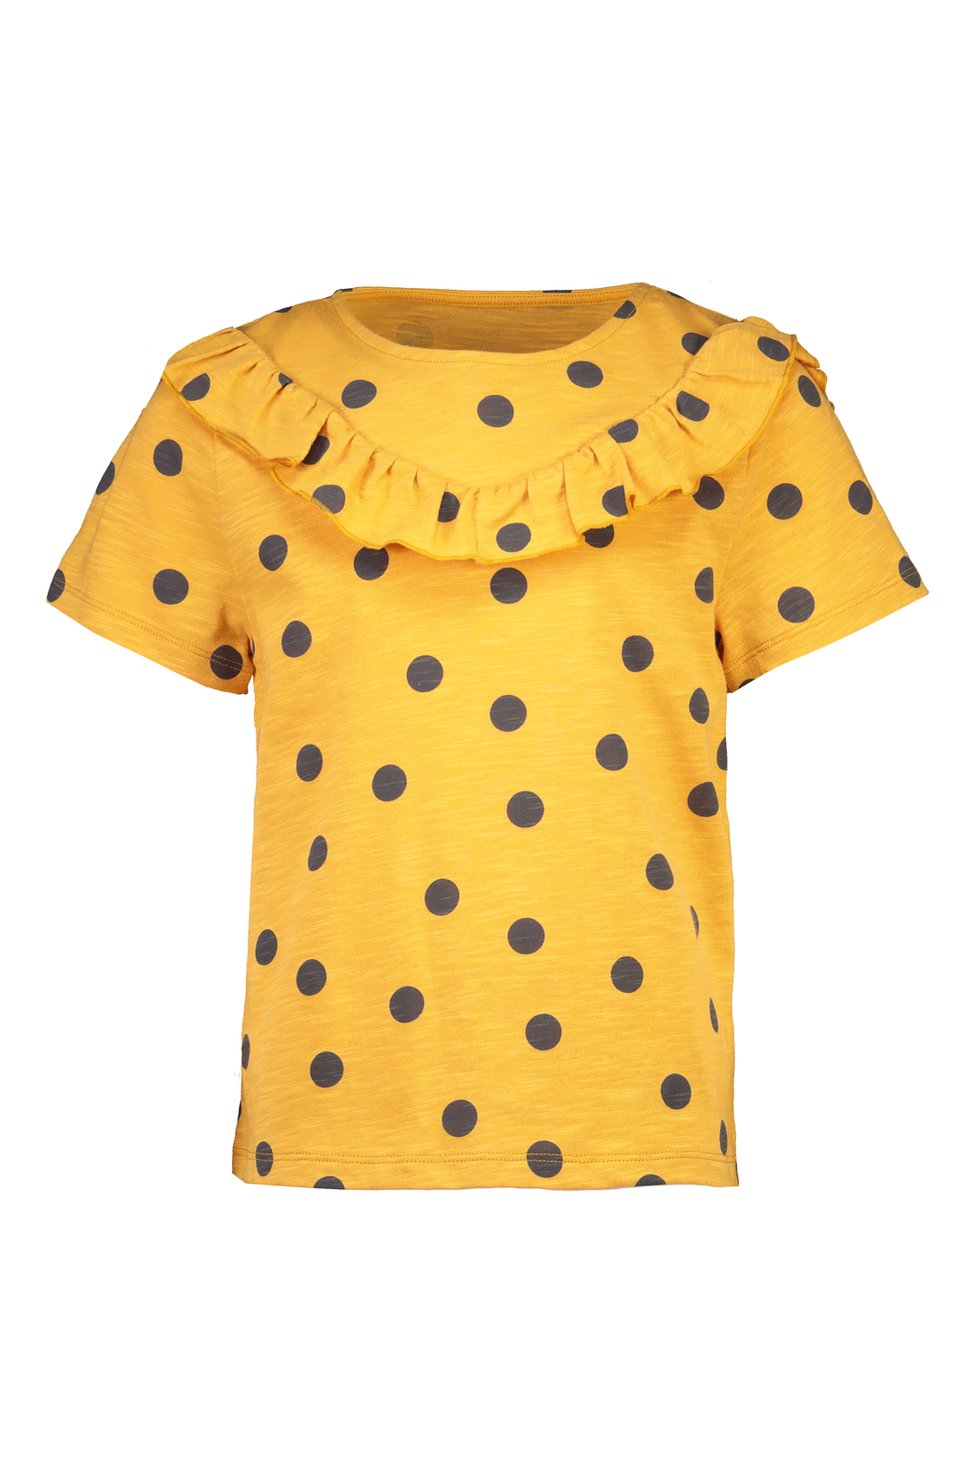 Dívčí žluté tričko s puntíky, 100% bavlna Cena: 149 Kč